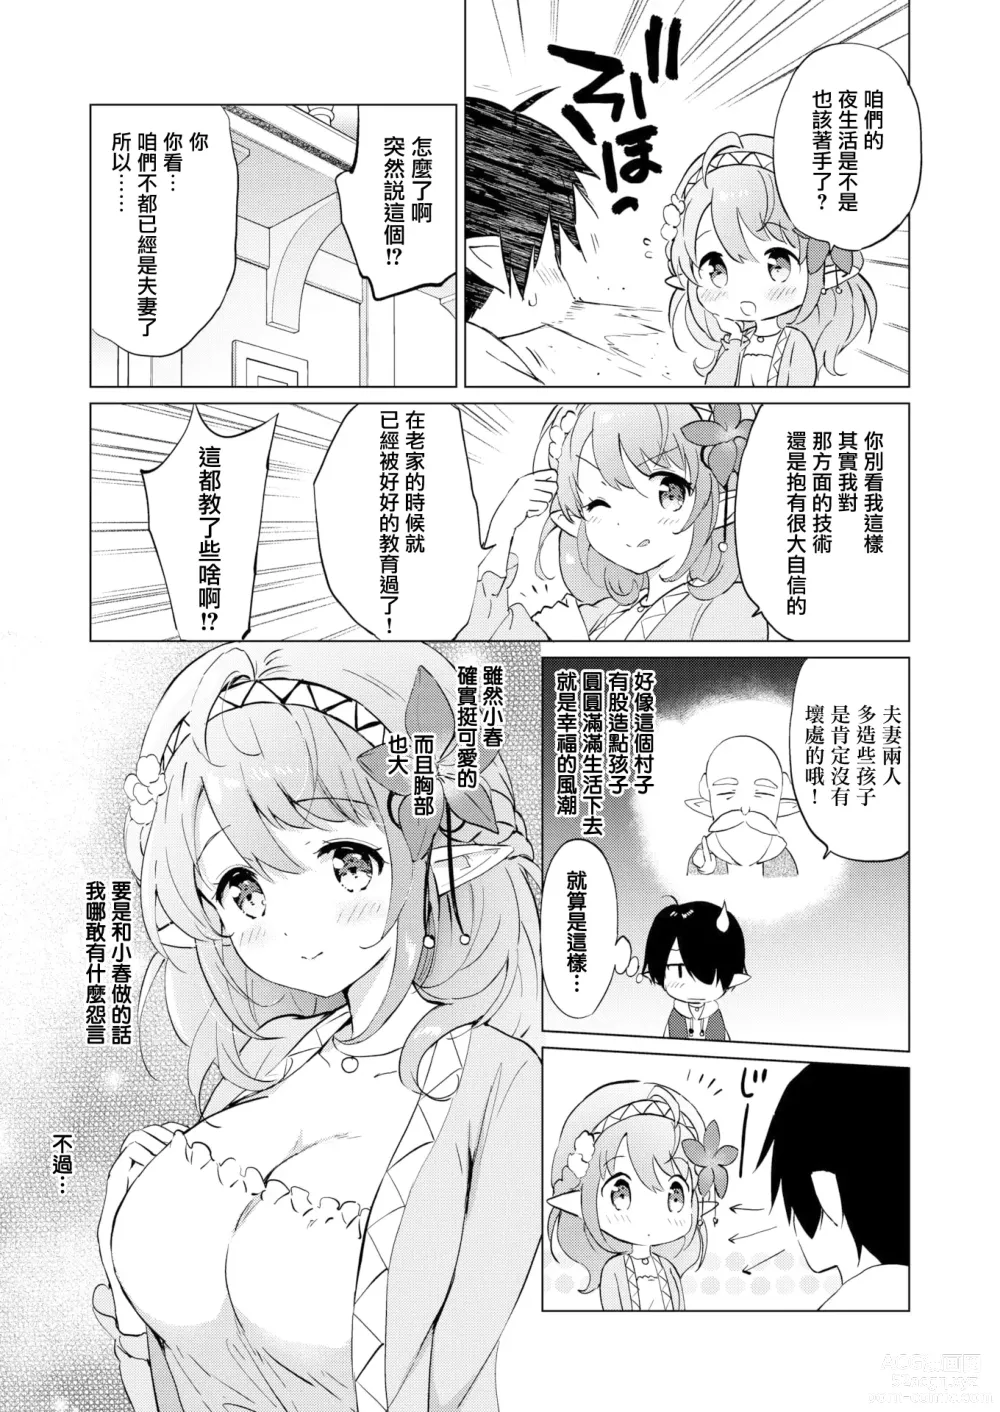 Page 9 of manga Mitsugetsu Paradise - Honeymoon Paradise (decensored)